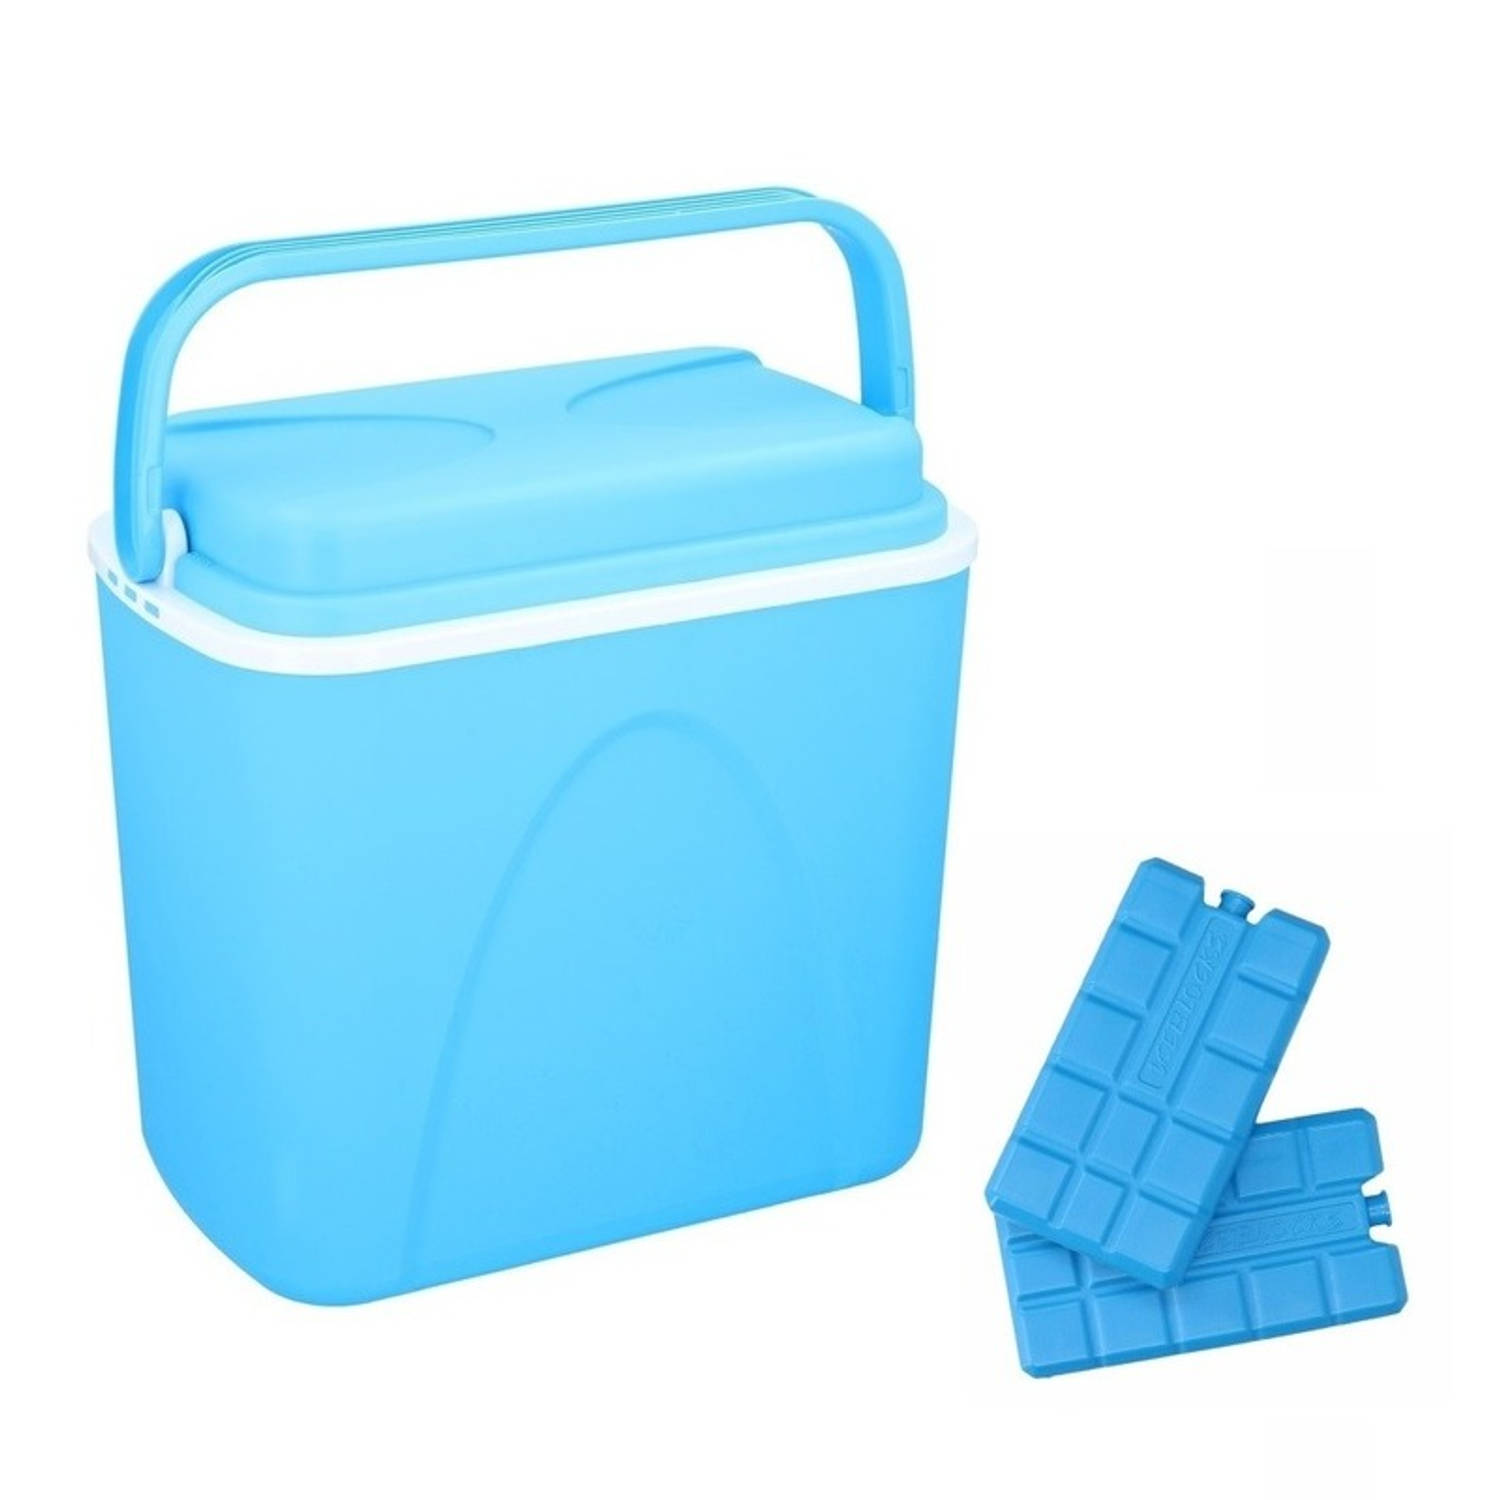 Blauwe koelboxen 24 liter inclusief 6 koelelementen - Koelboxen